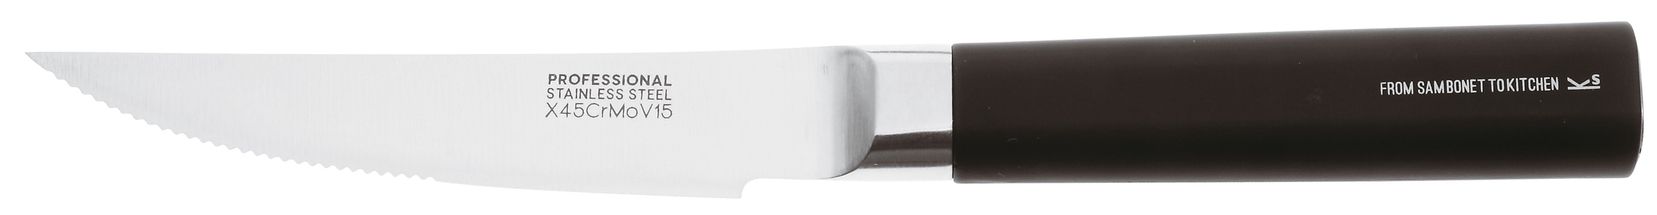 <h2>Sambonet Steakmesser Set Gezahnt 12 cm</h2>

<p>Mit einem Steakmesser Set k&ouml;nnen Sie Ihr St&uuml;ck Fleisch noch&nbsp;l